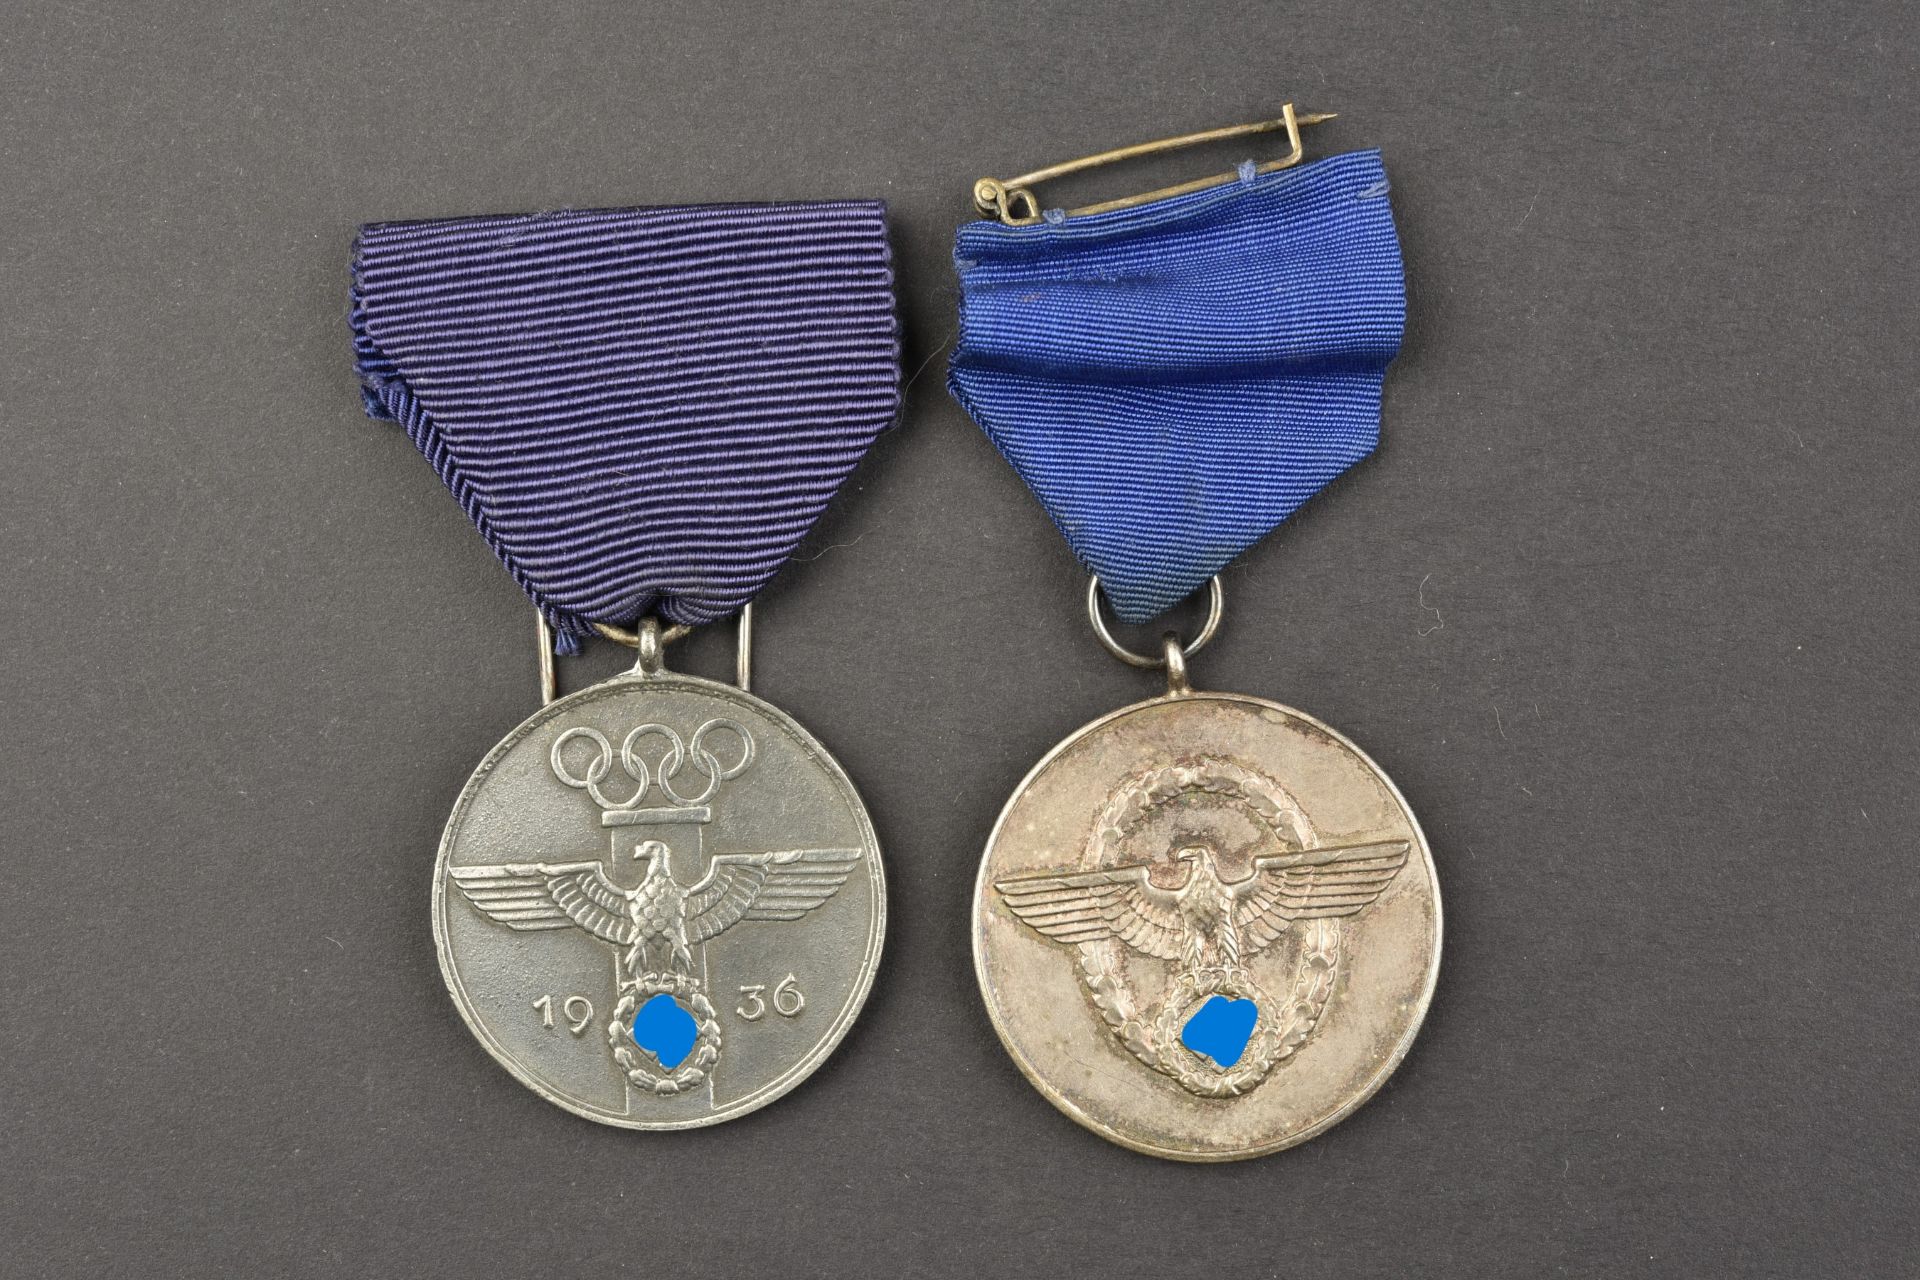 Medailles de service. Service medals.